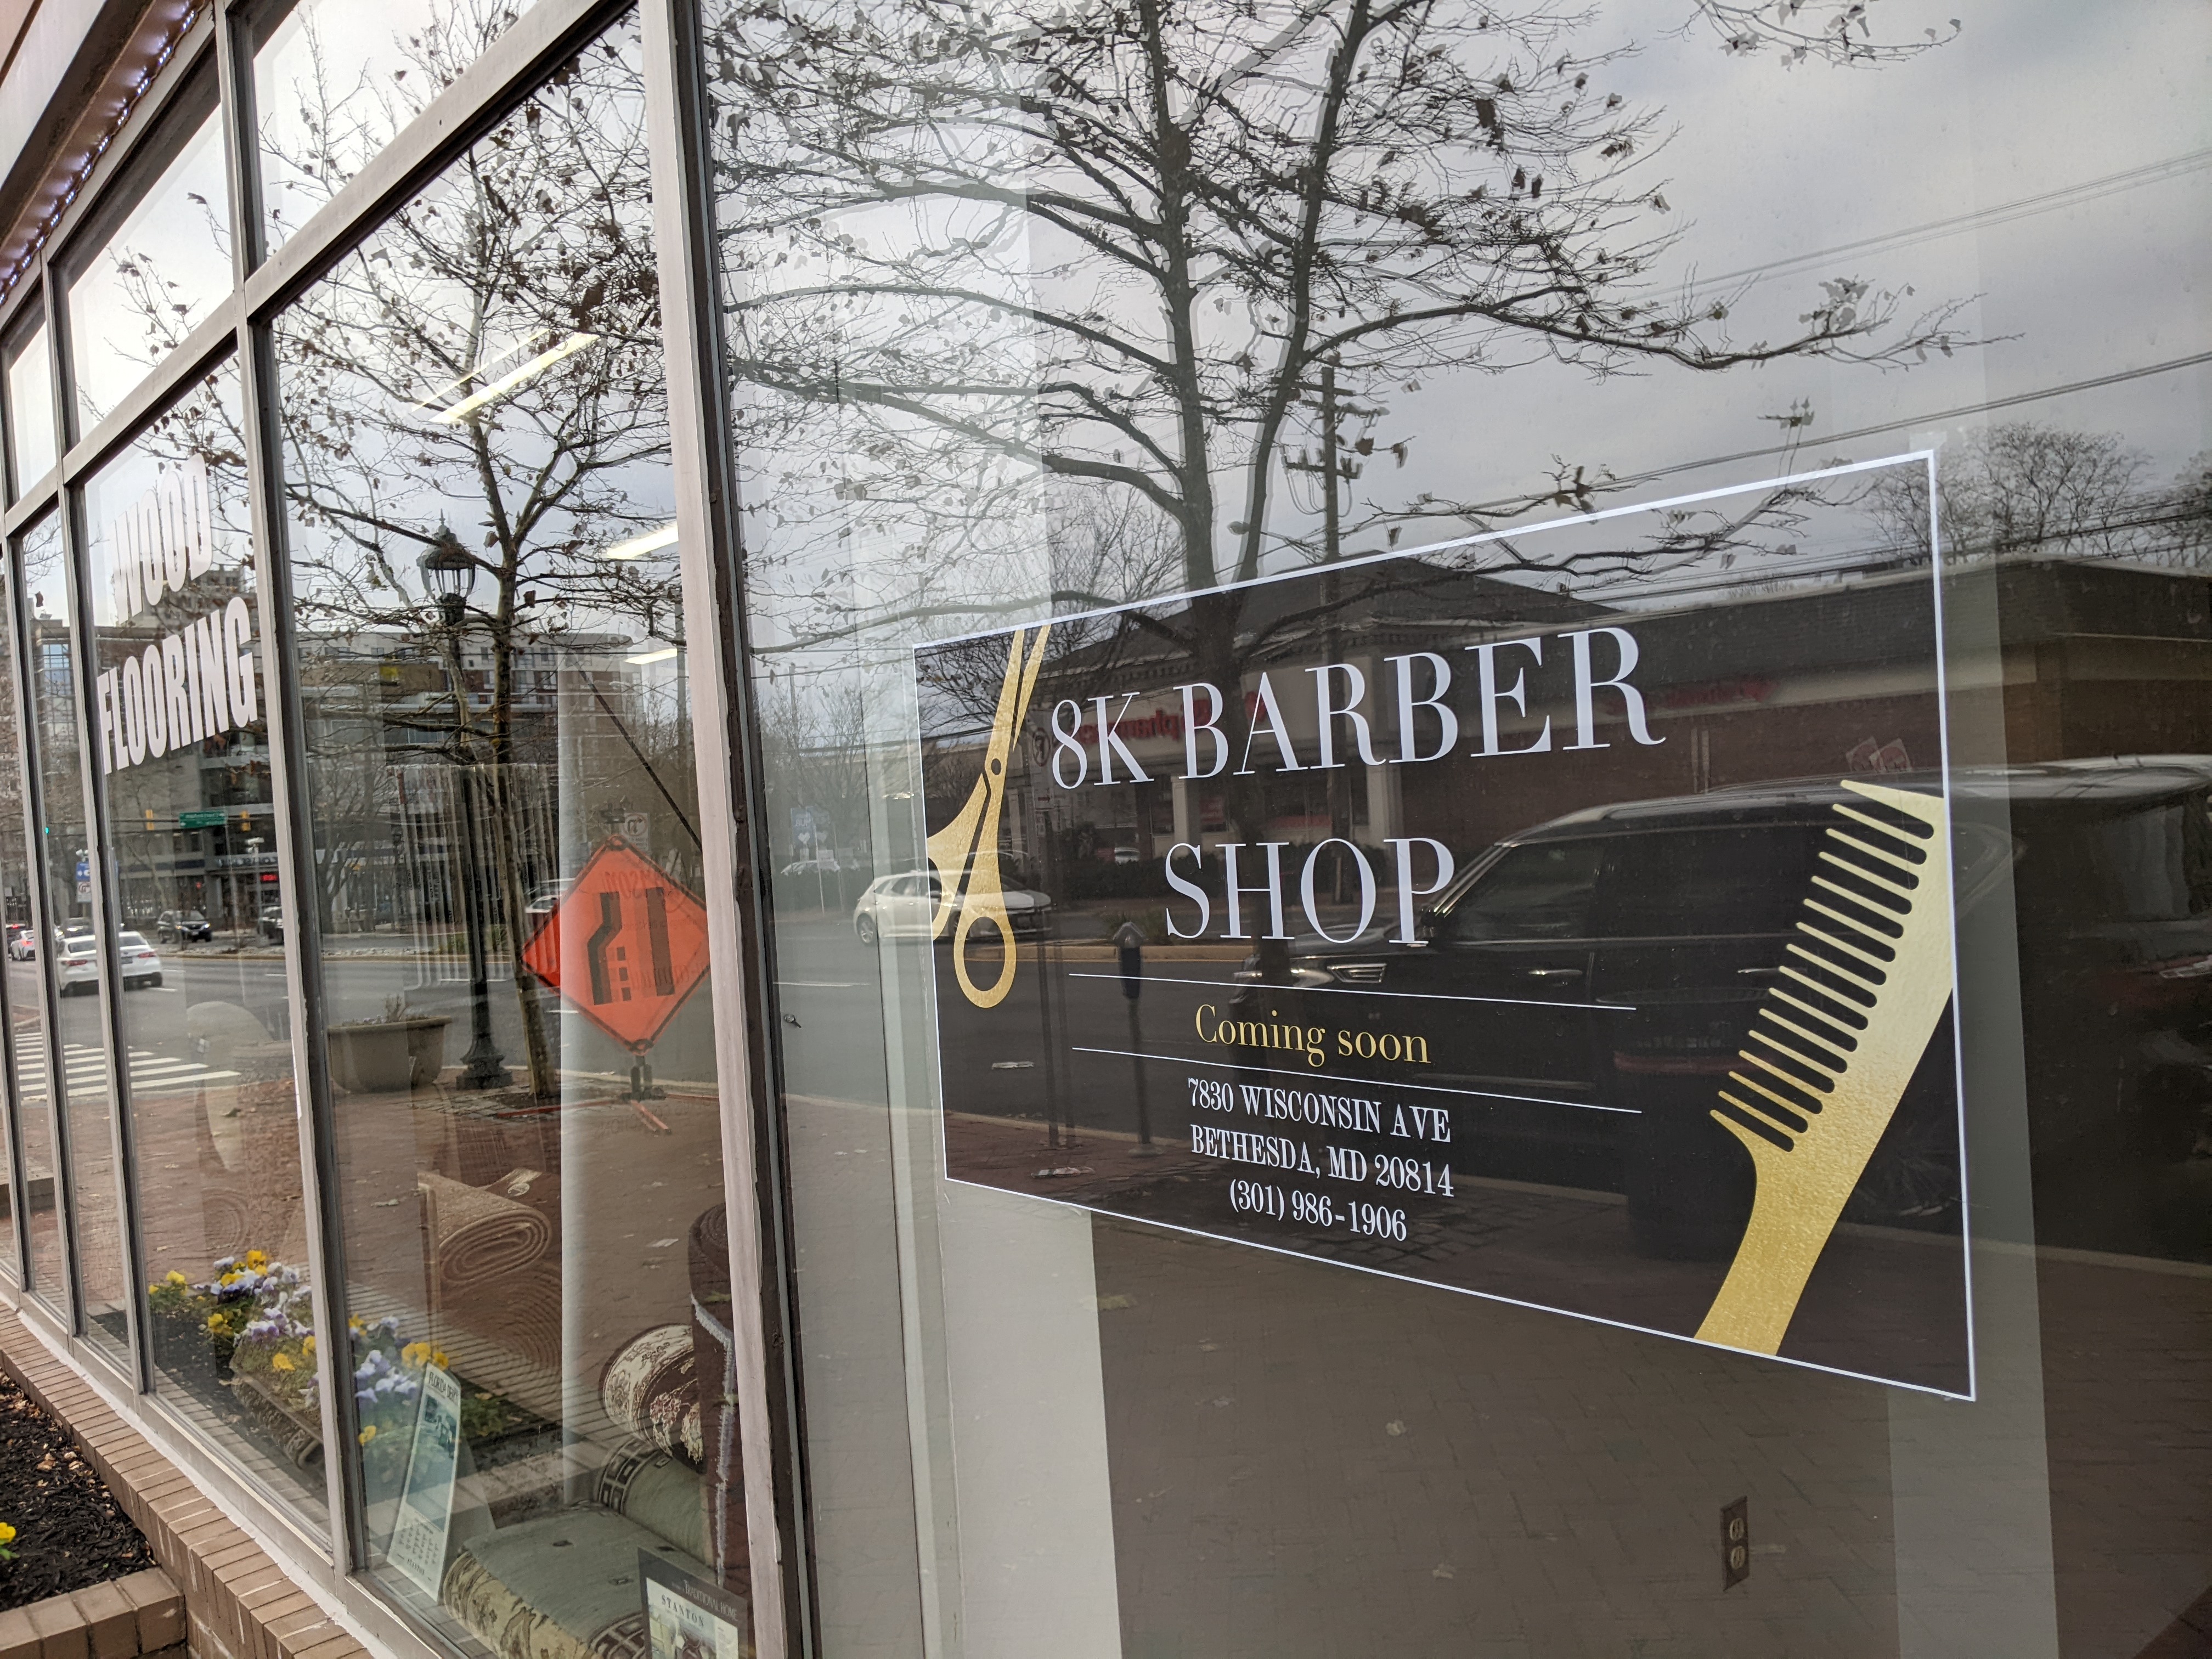 8k barber shop